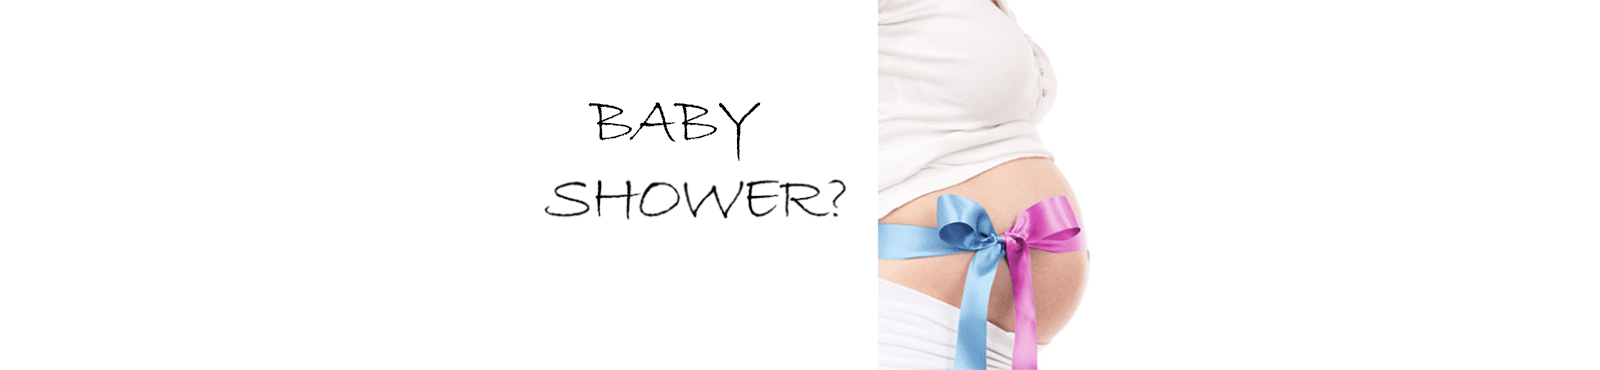 babyshower - hvad er et babyshower - traditioner - gaver til babyshower - modernhousedk